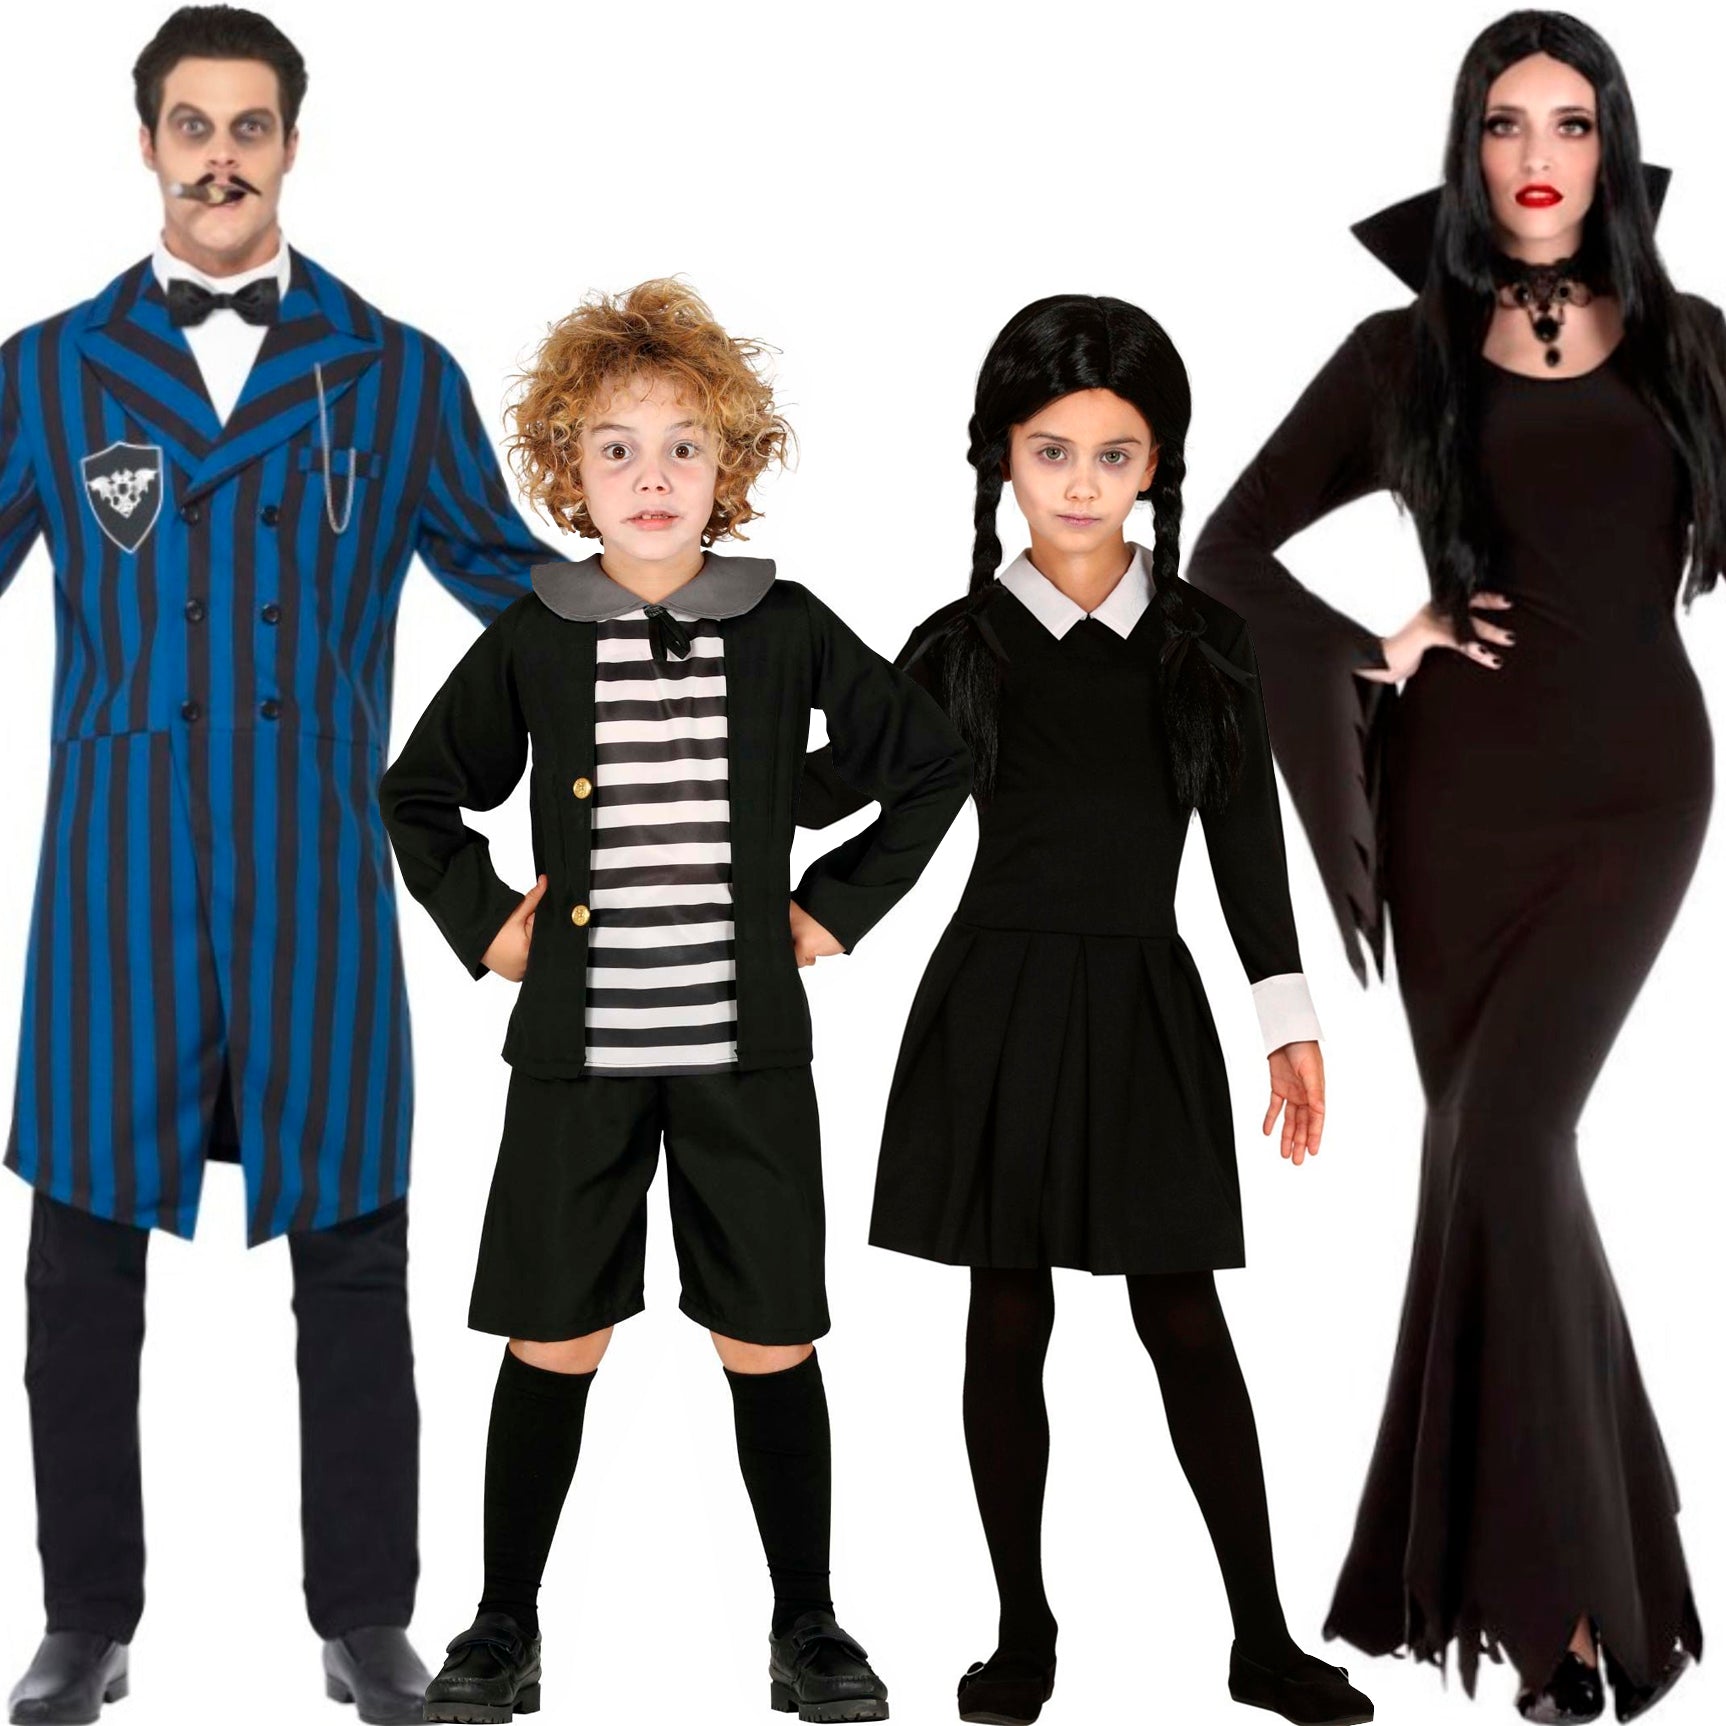 Acquista: Costumi di gruppo da Famiglia Addams